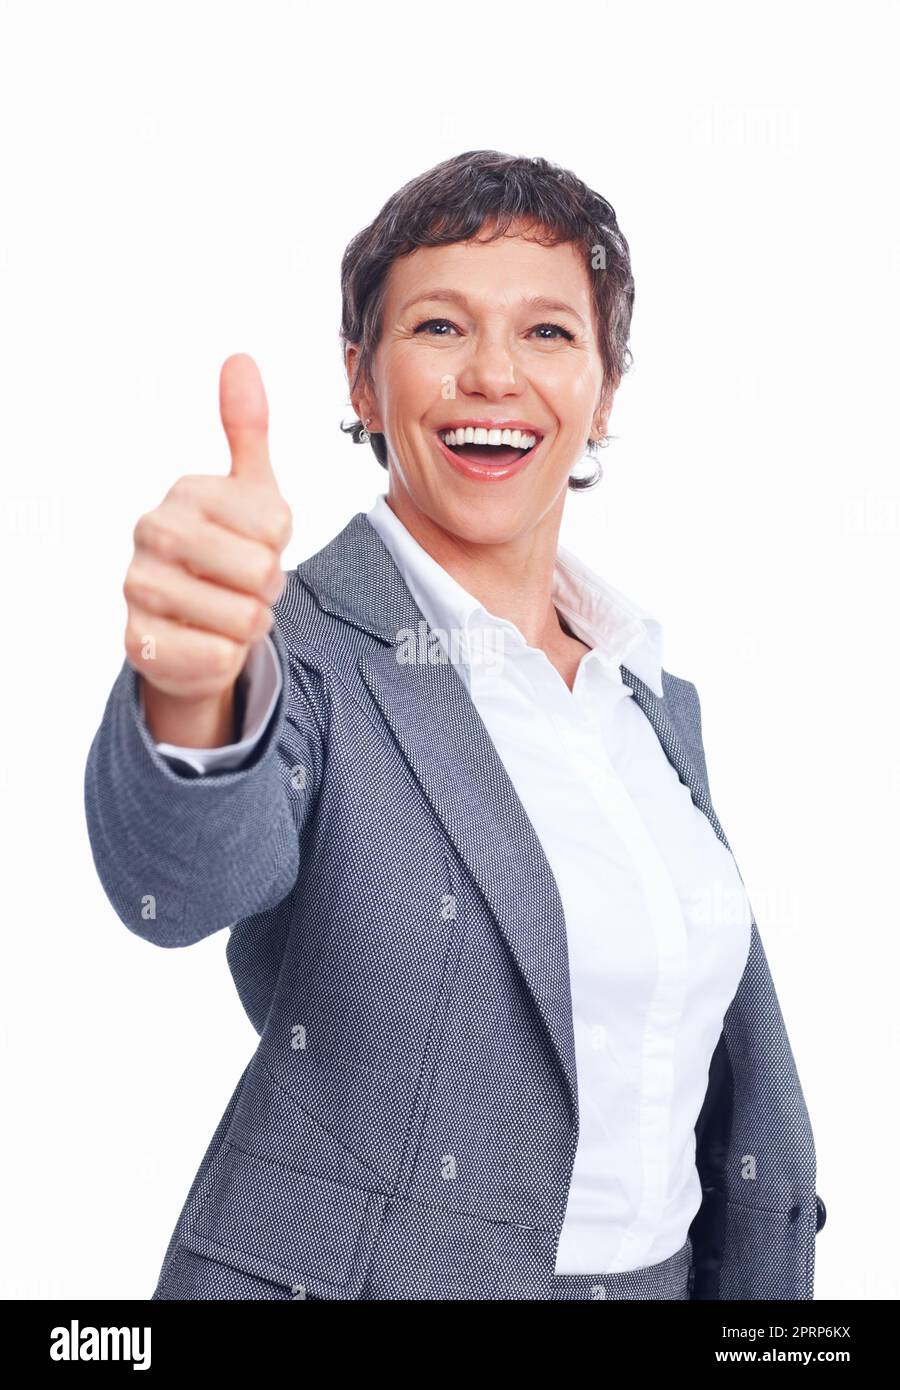 Gut gemacht. Porträt einer lächelnden weiblichen Führungskraft, die Ihnen Glück auf weißem Hintergrund wünscht. Stockfoto